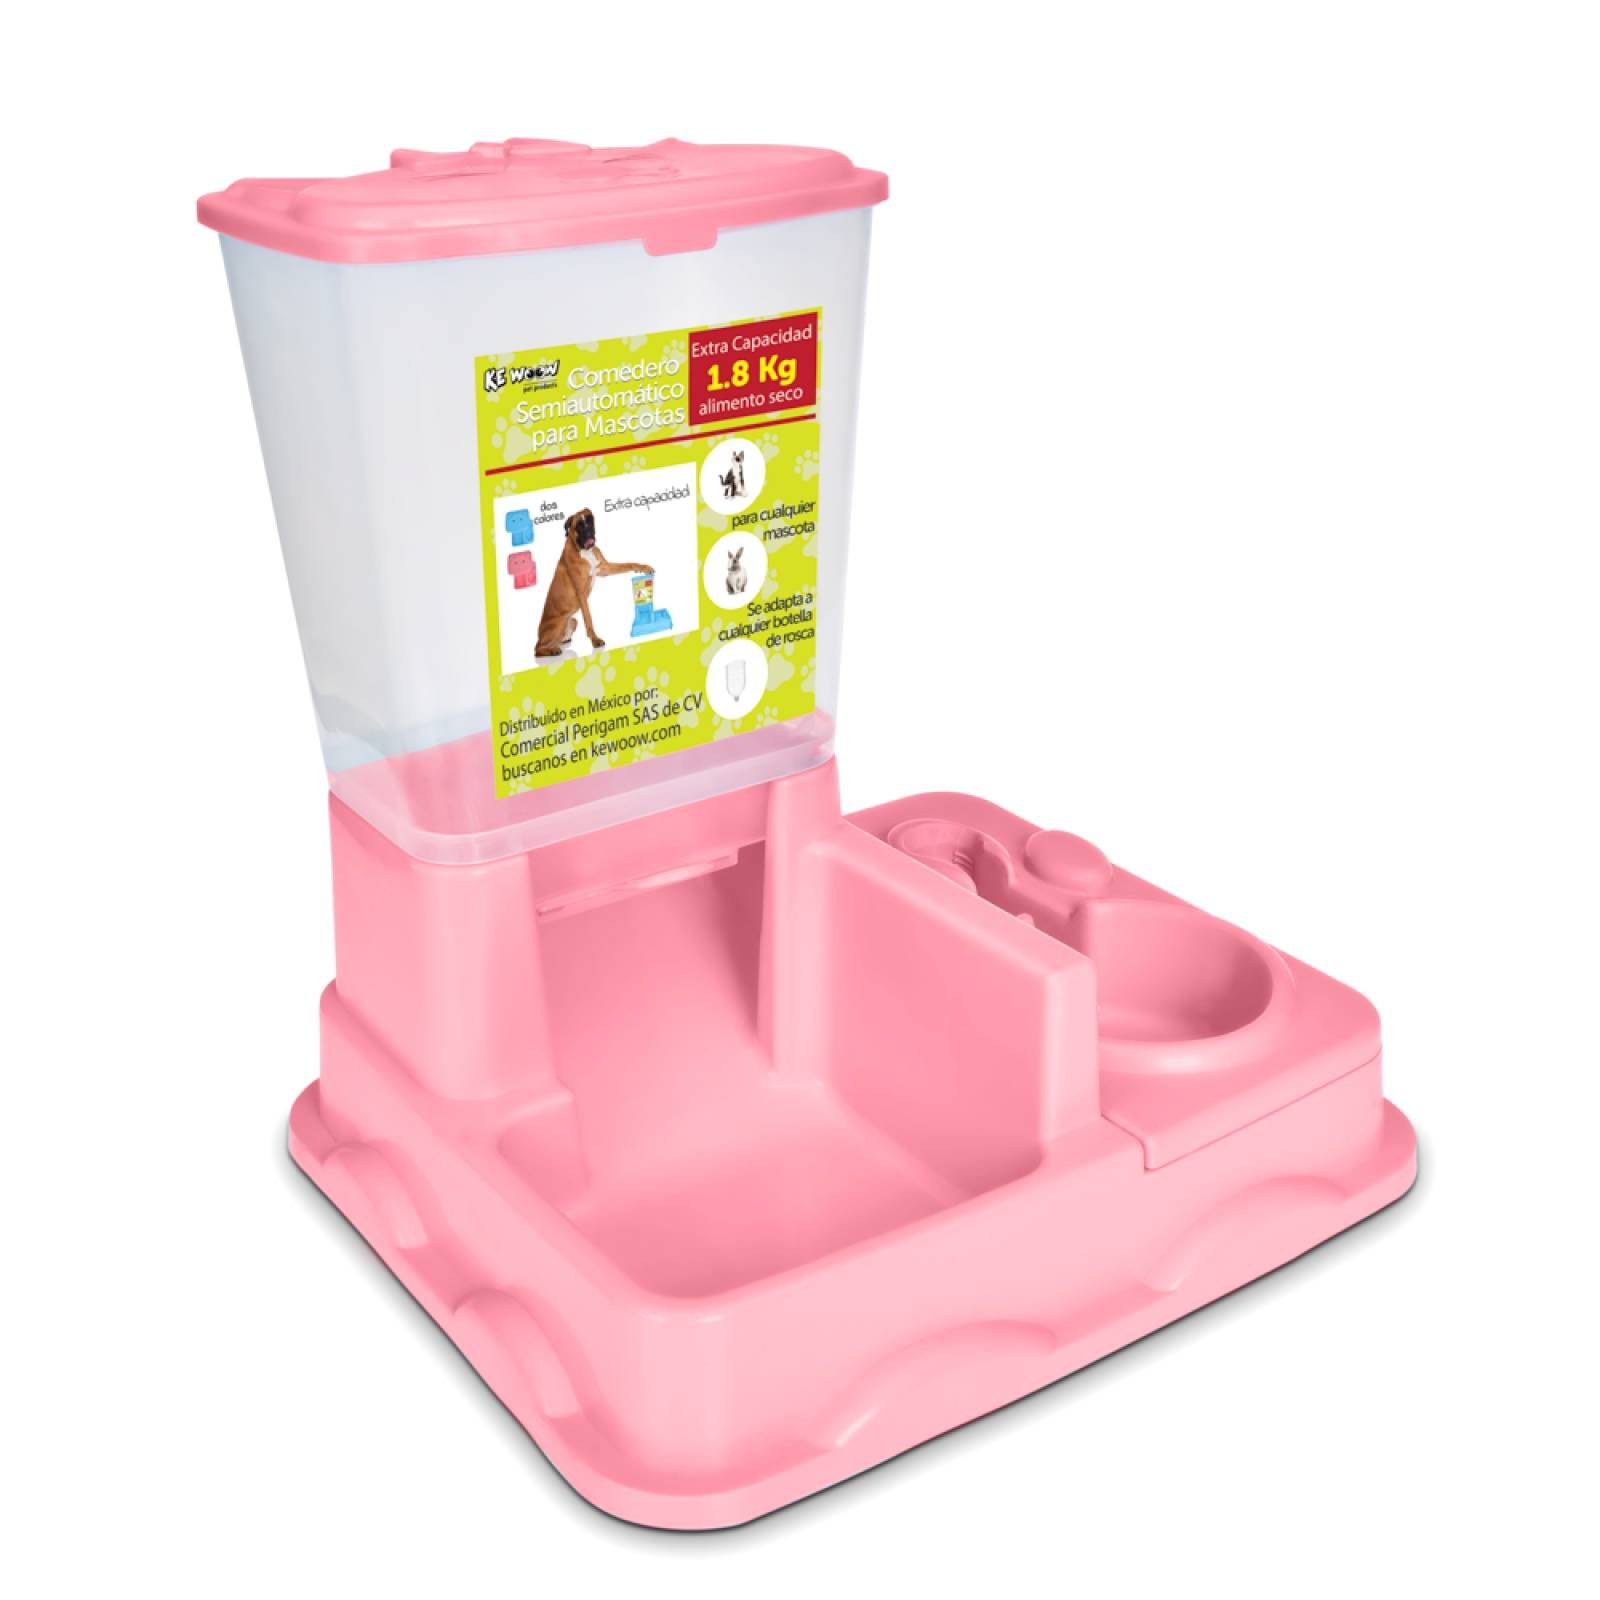 KE WOOW Comedero y bebedero semiautomático para mascotas. Dispensador de comida y agua para perros, gatos, conejos y otras mascotas. Color Rosa